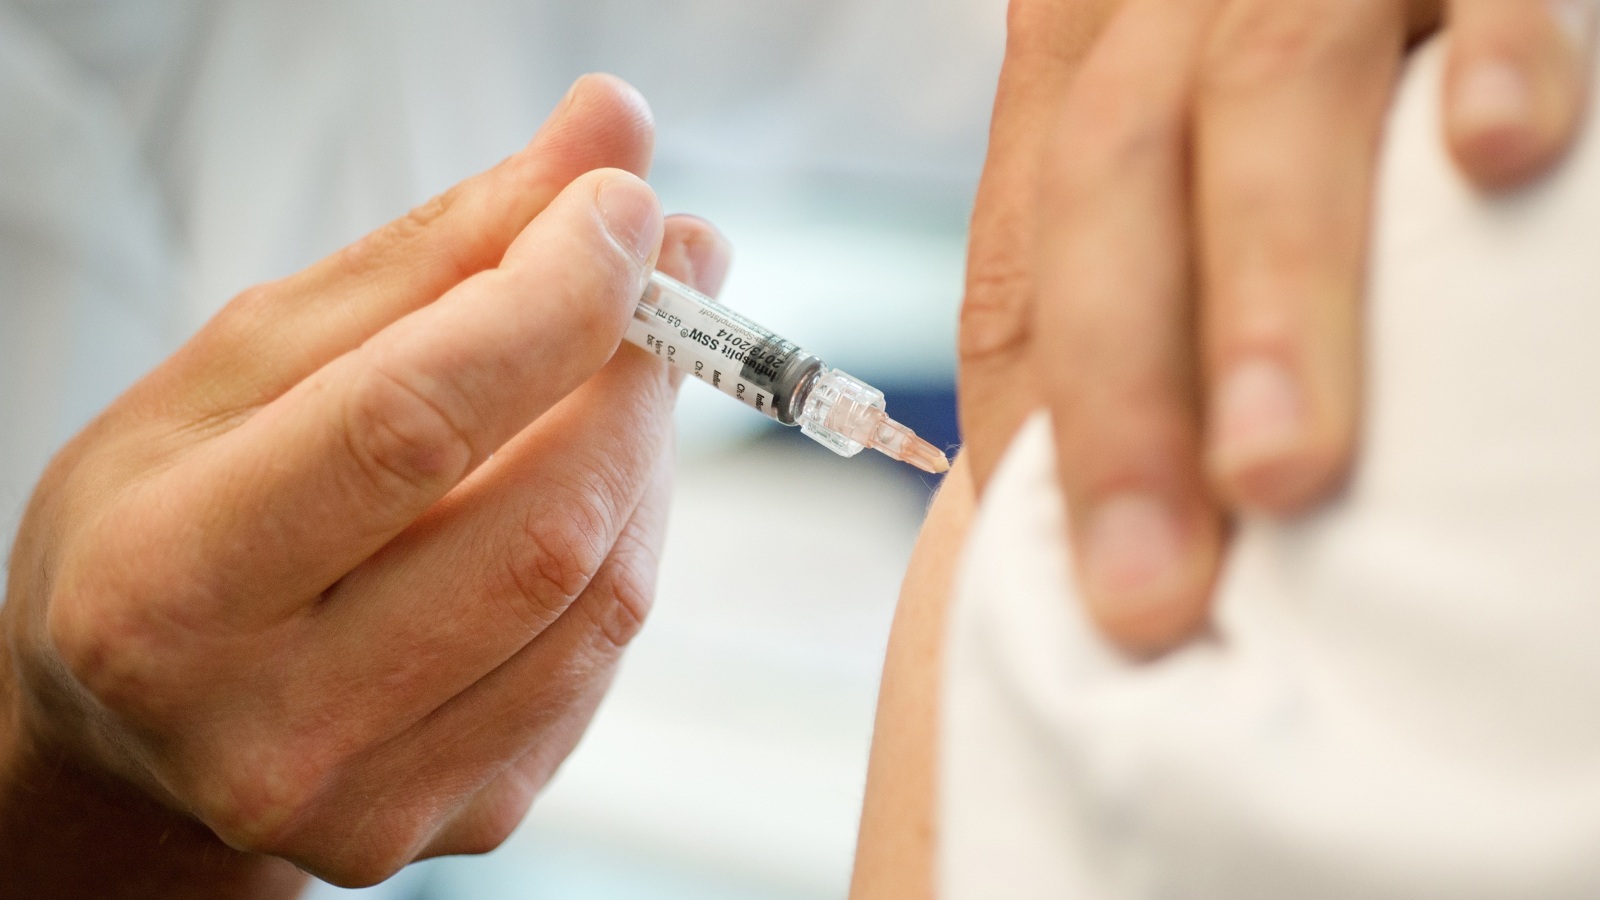 ‪الدريني نصح بأخذ التطعيم للإنفلونزا الموسمية كل عام خاصة للأشخاص الأكثر عرضة للمرض‬ (الألمانية)